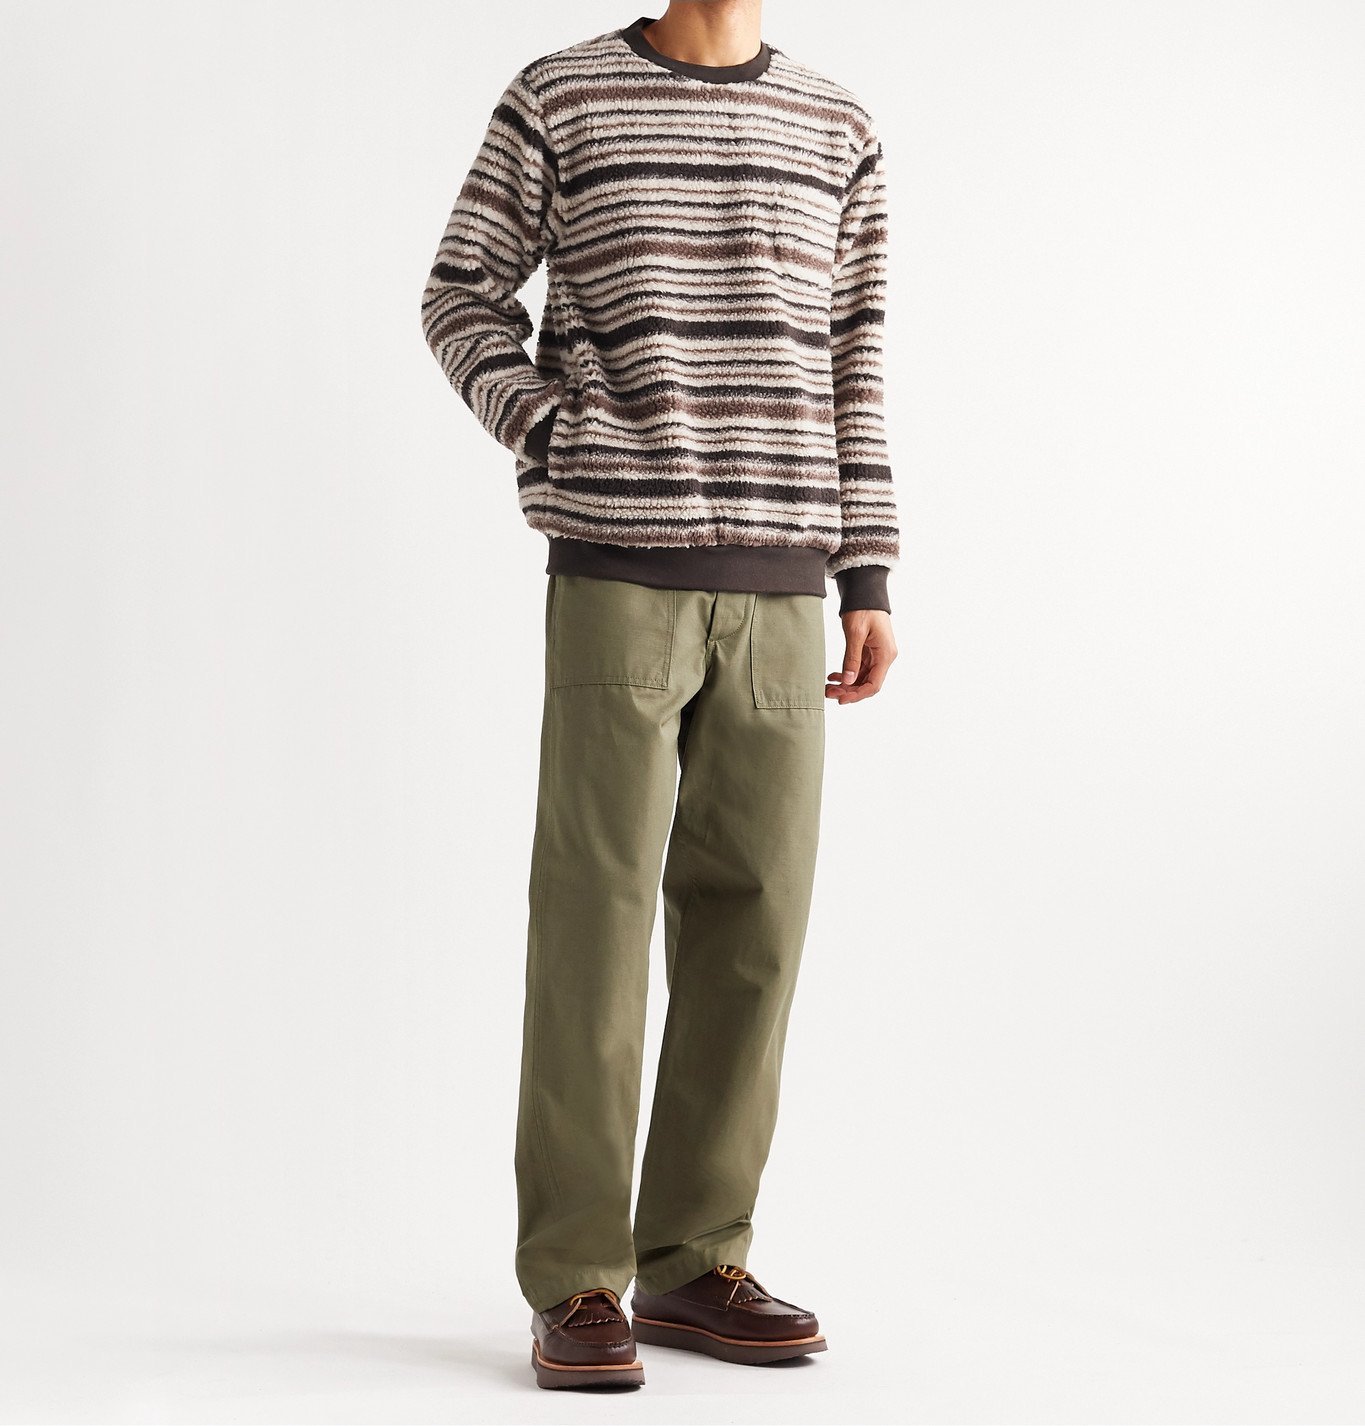 Beams Plus - Striped Fleece Sweatshirt - Brown Beams Plus